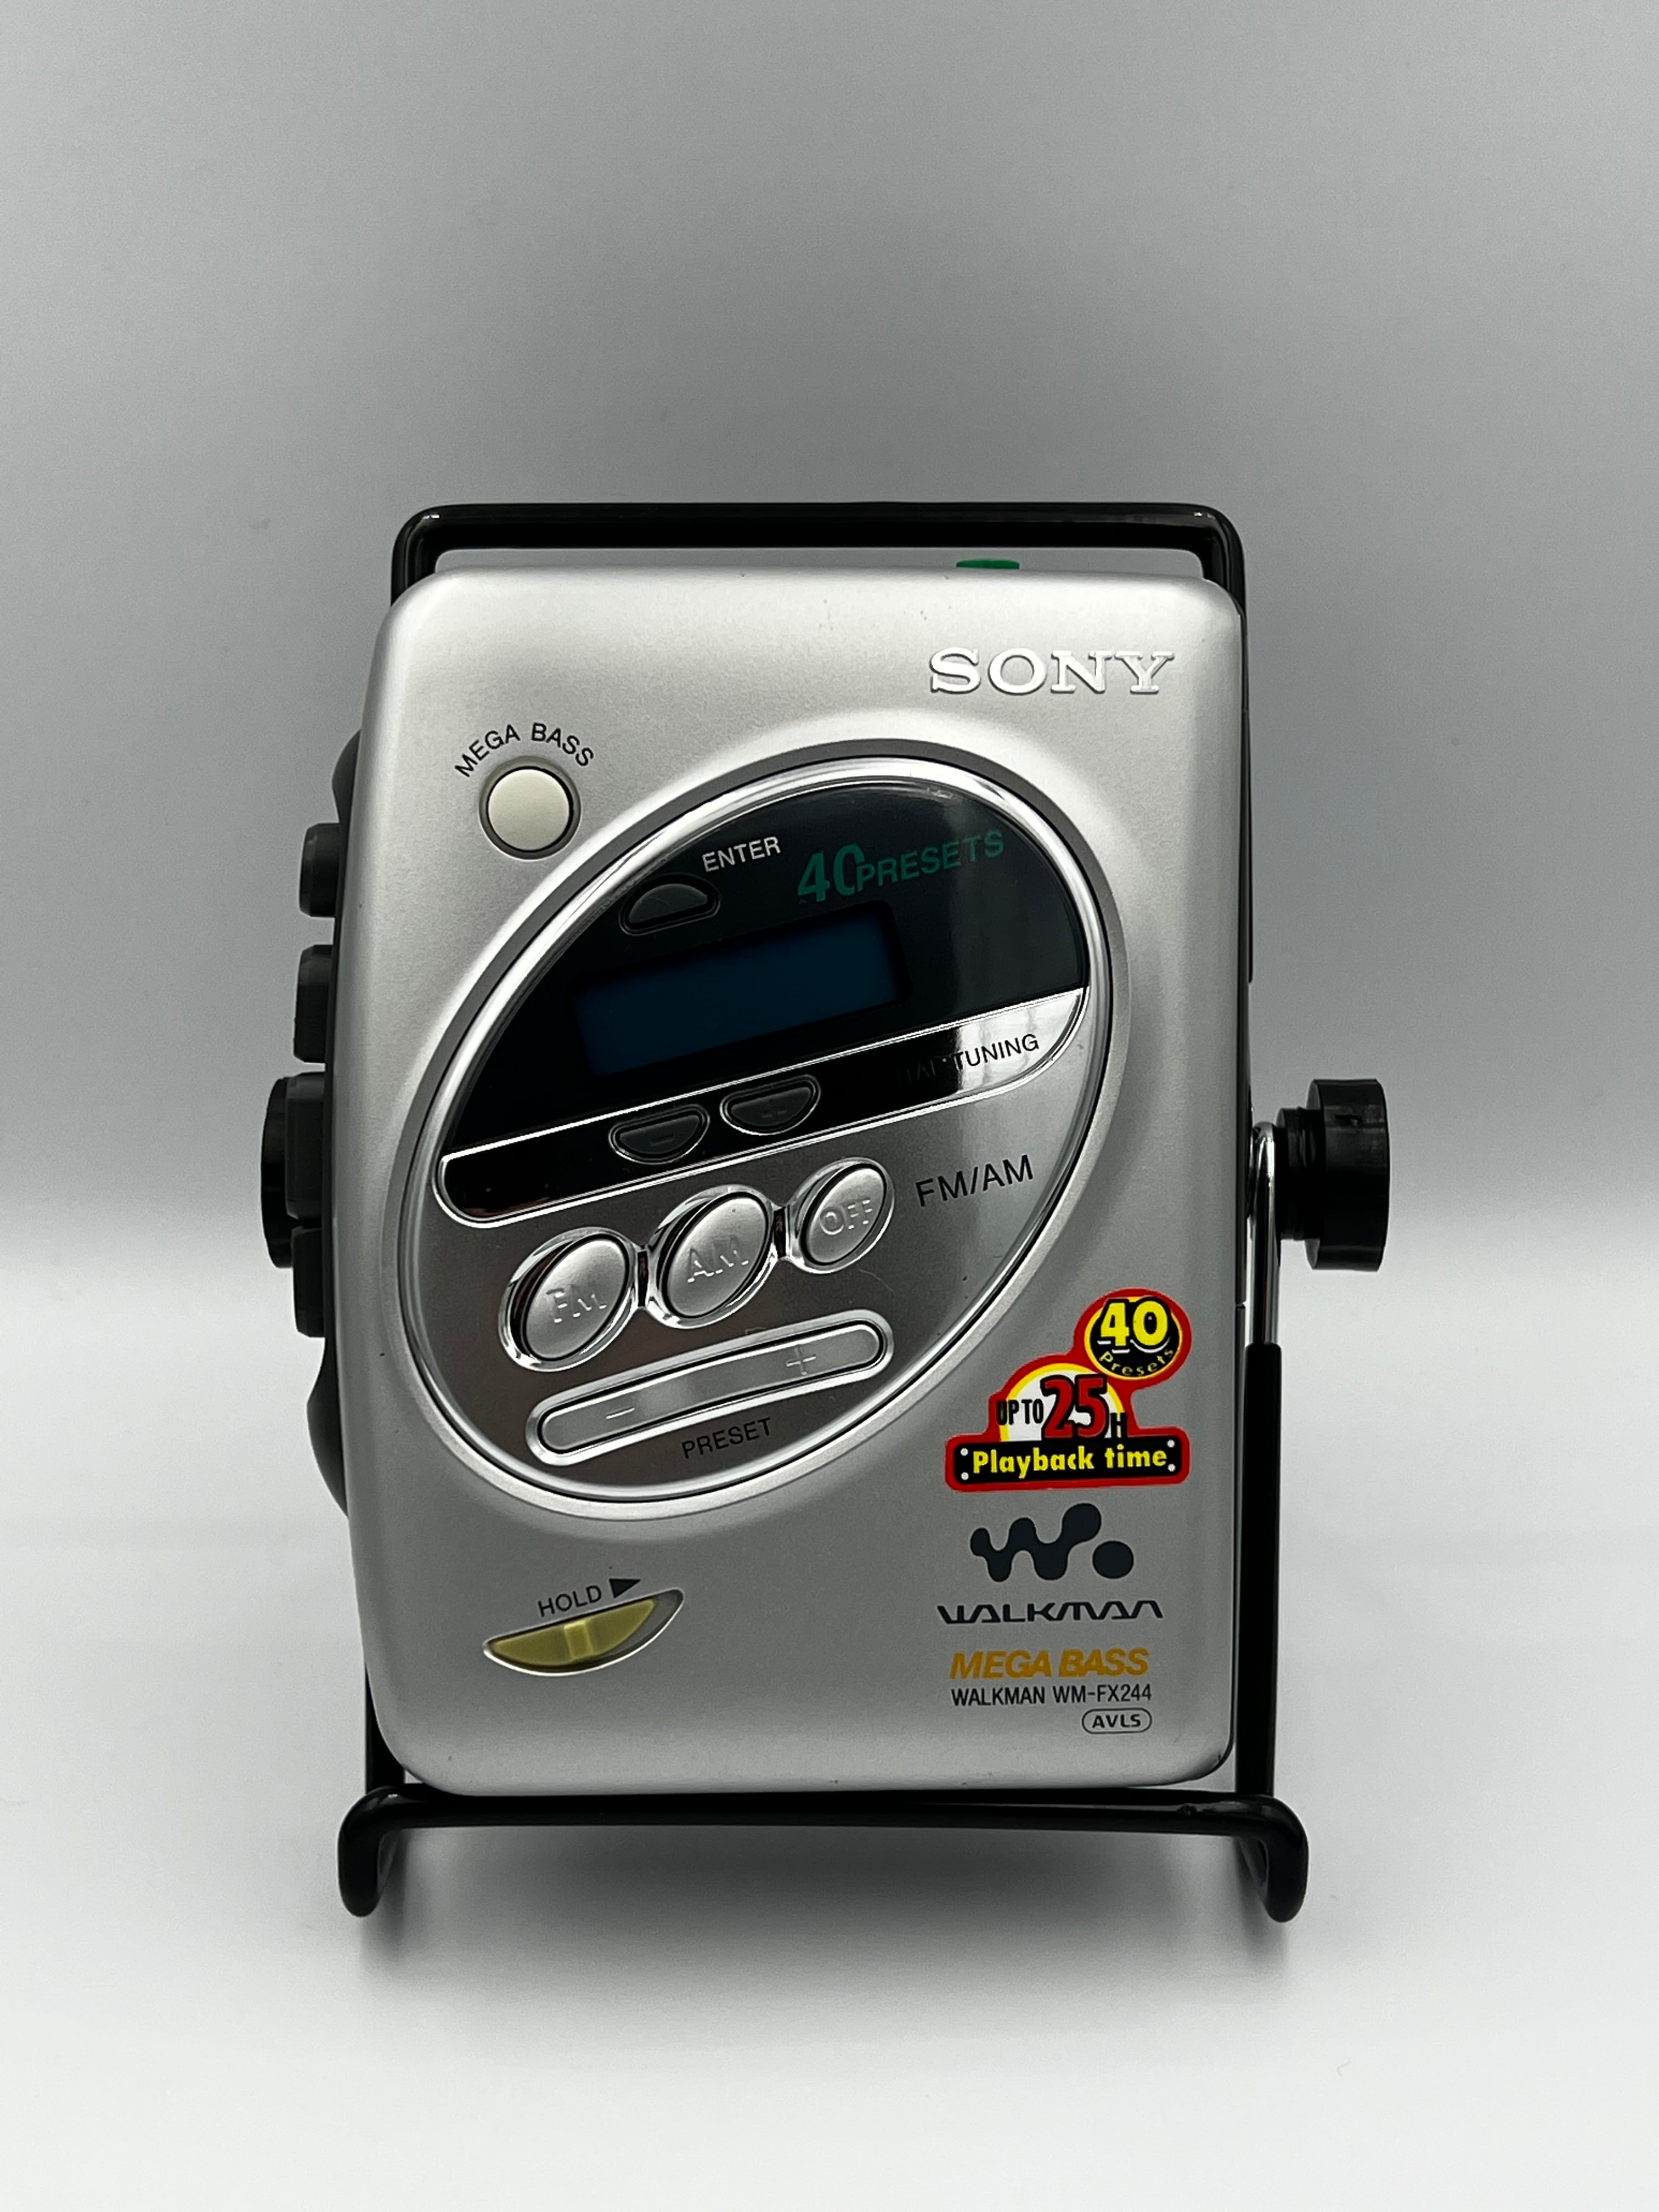 SONY Walkman WM-EQ3 